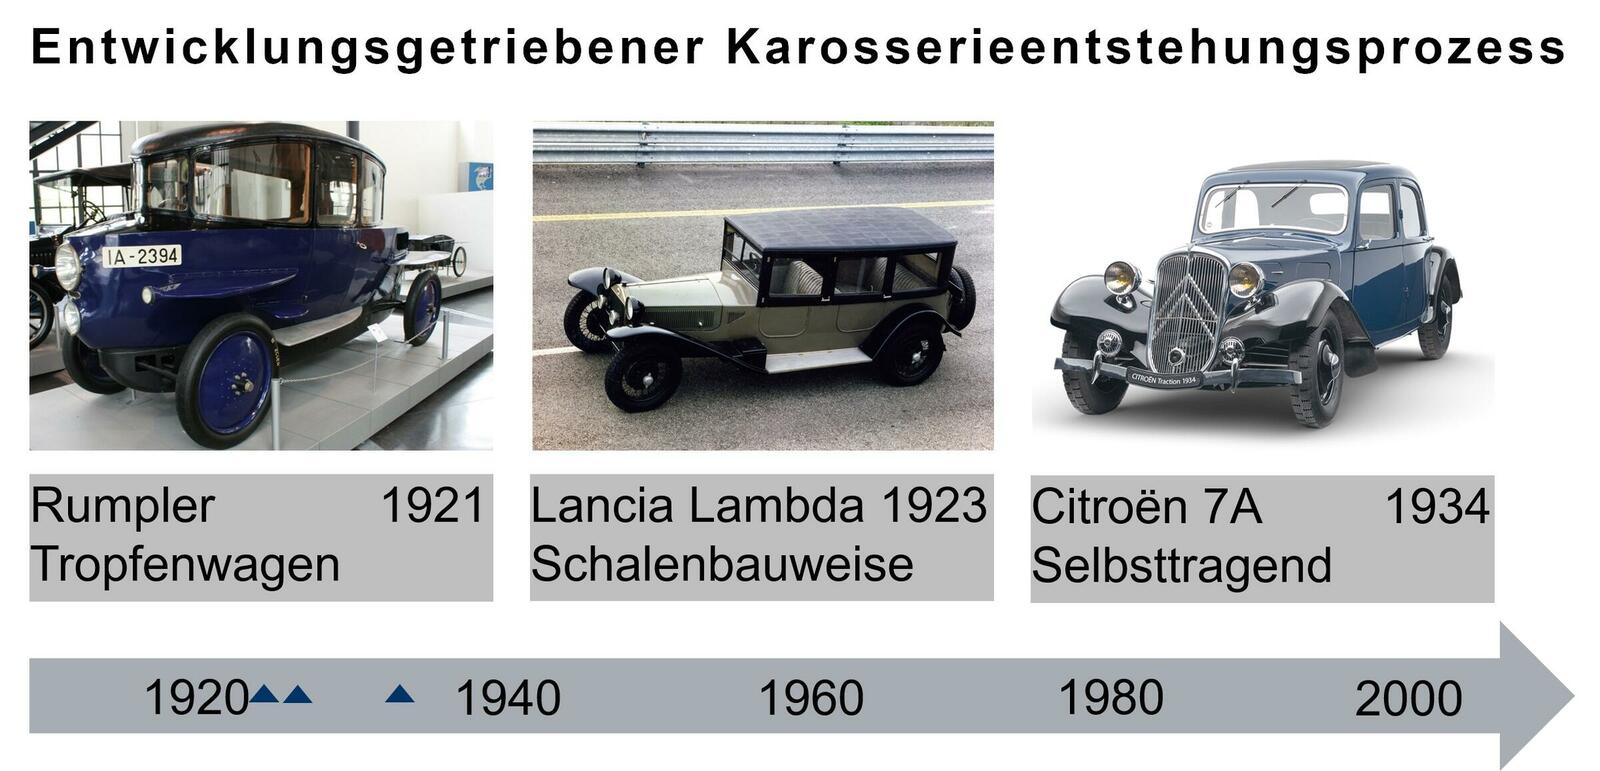 Historische Beispiele des entwicklungsgetriebenen Karosserieentstehungsprozesses mit Rumpler Tropfenwagen (© Matthias Kierse | Secret Classics GmbH), Lancia Lambda (© Stellantis N.V.) und Citroën Traction Avant 7A 